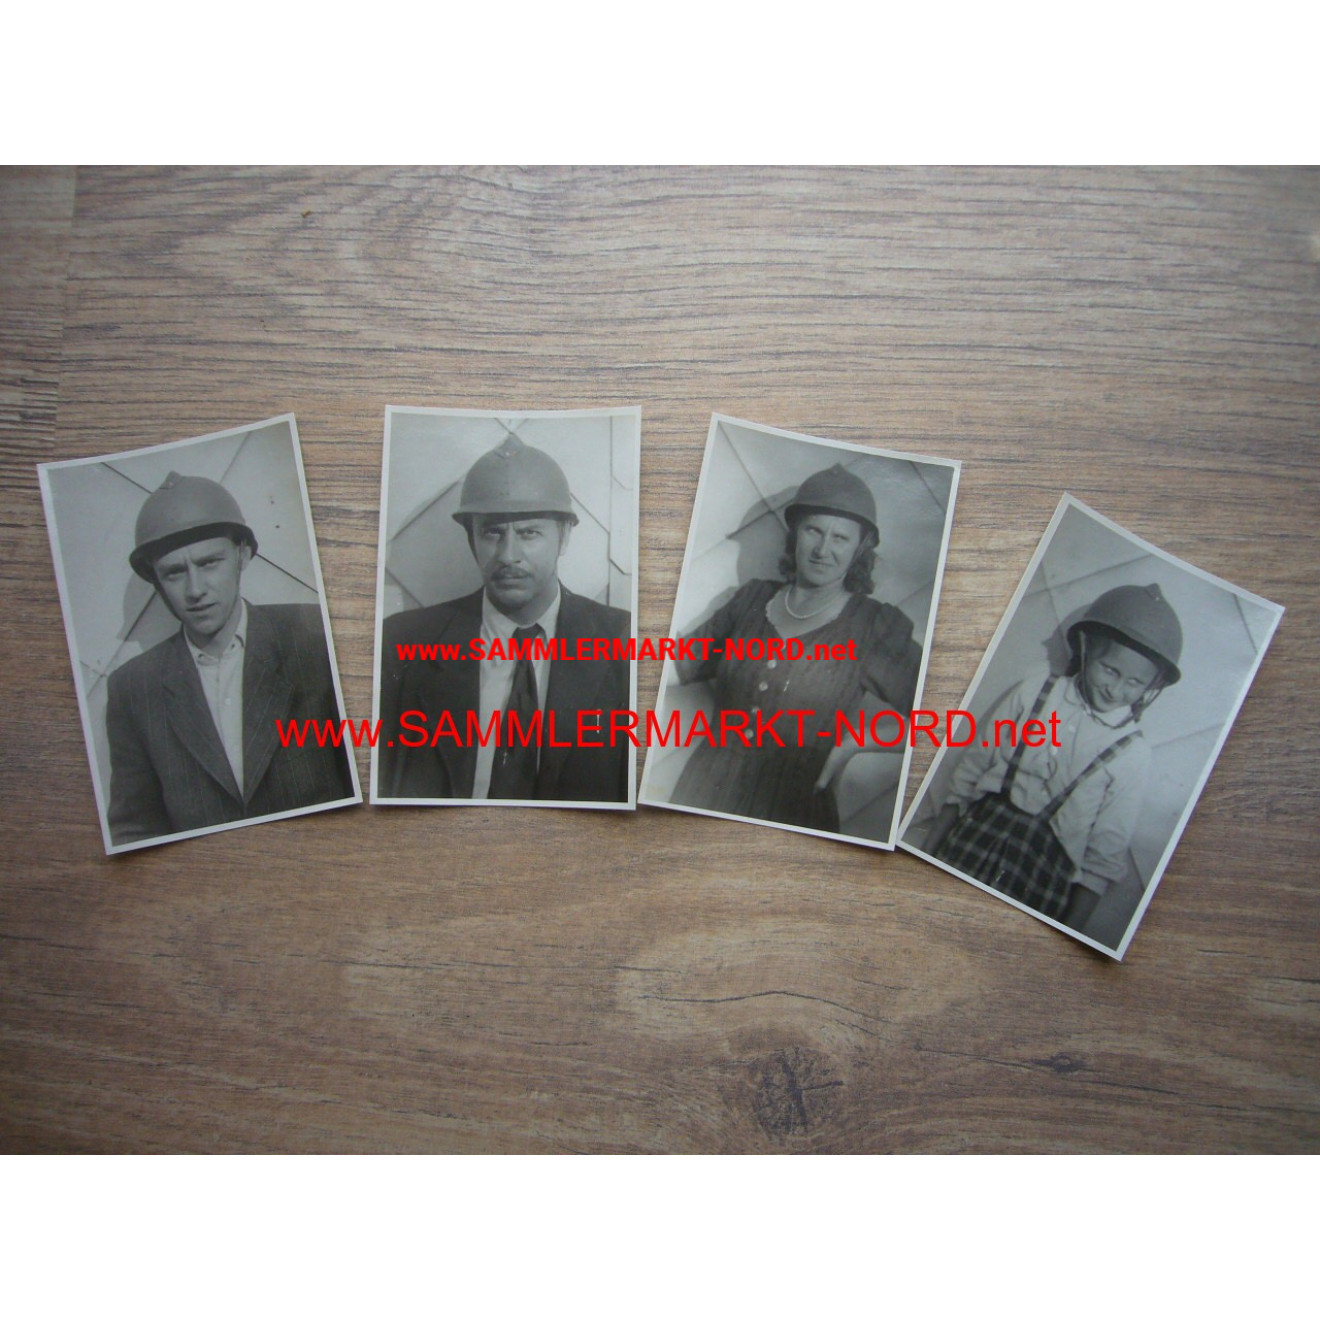 4 x Foto Personen mit französischen Adrian Stahlhelm